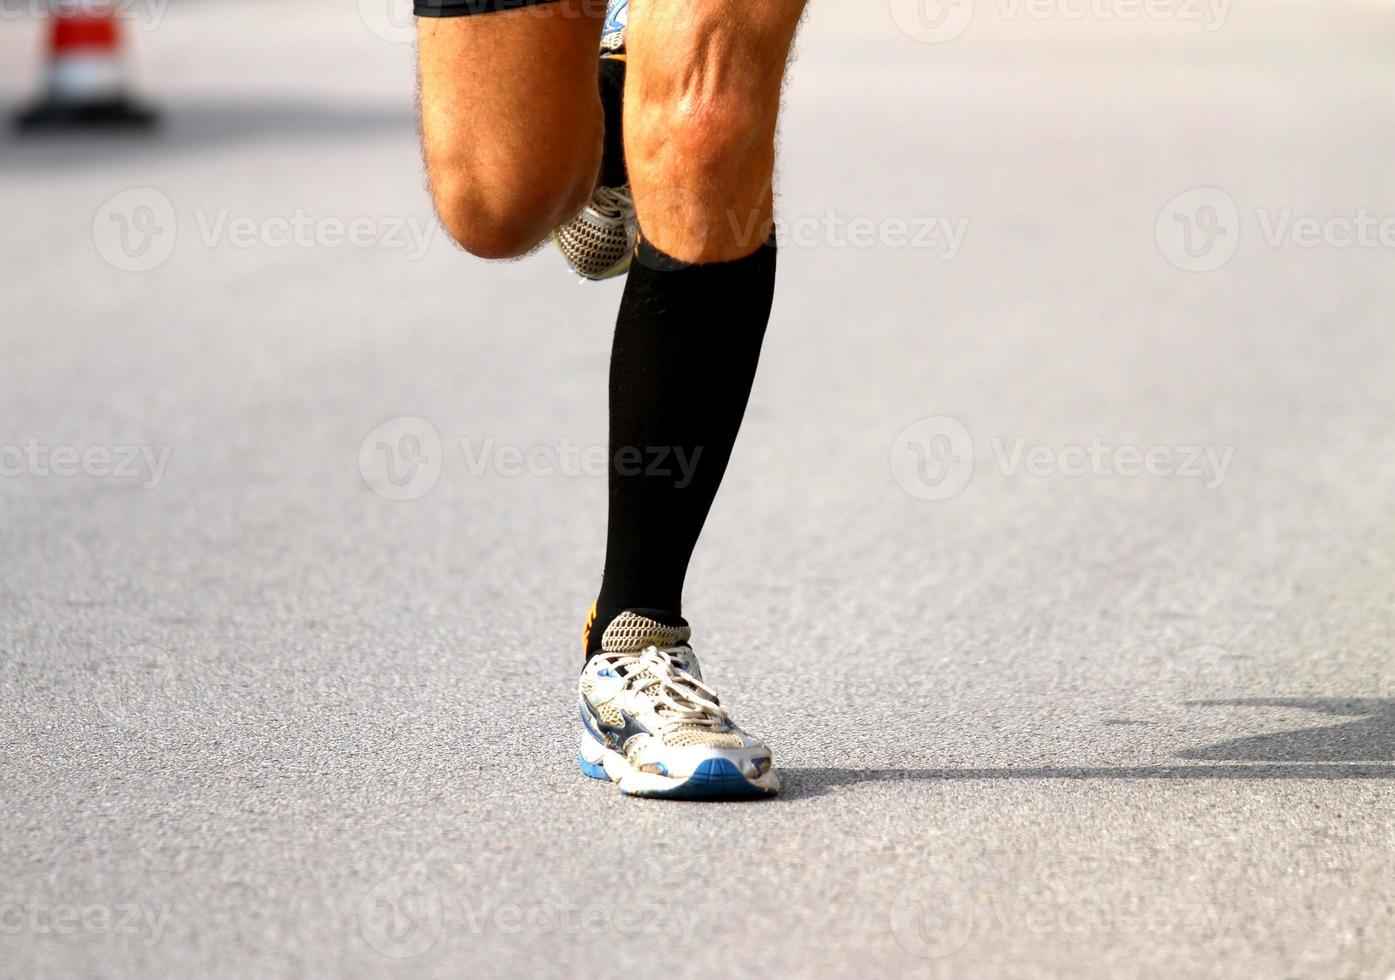 corredor rápido com tênis durante a maratona na estrada foto